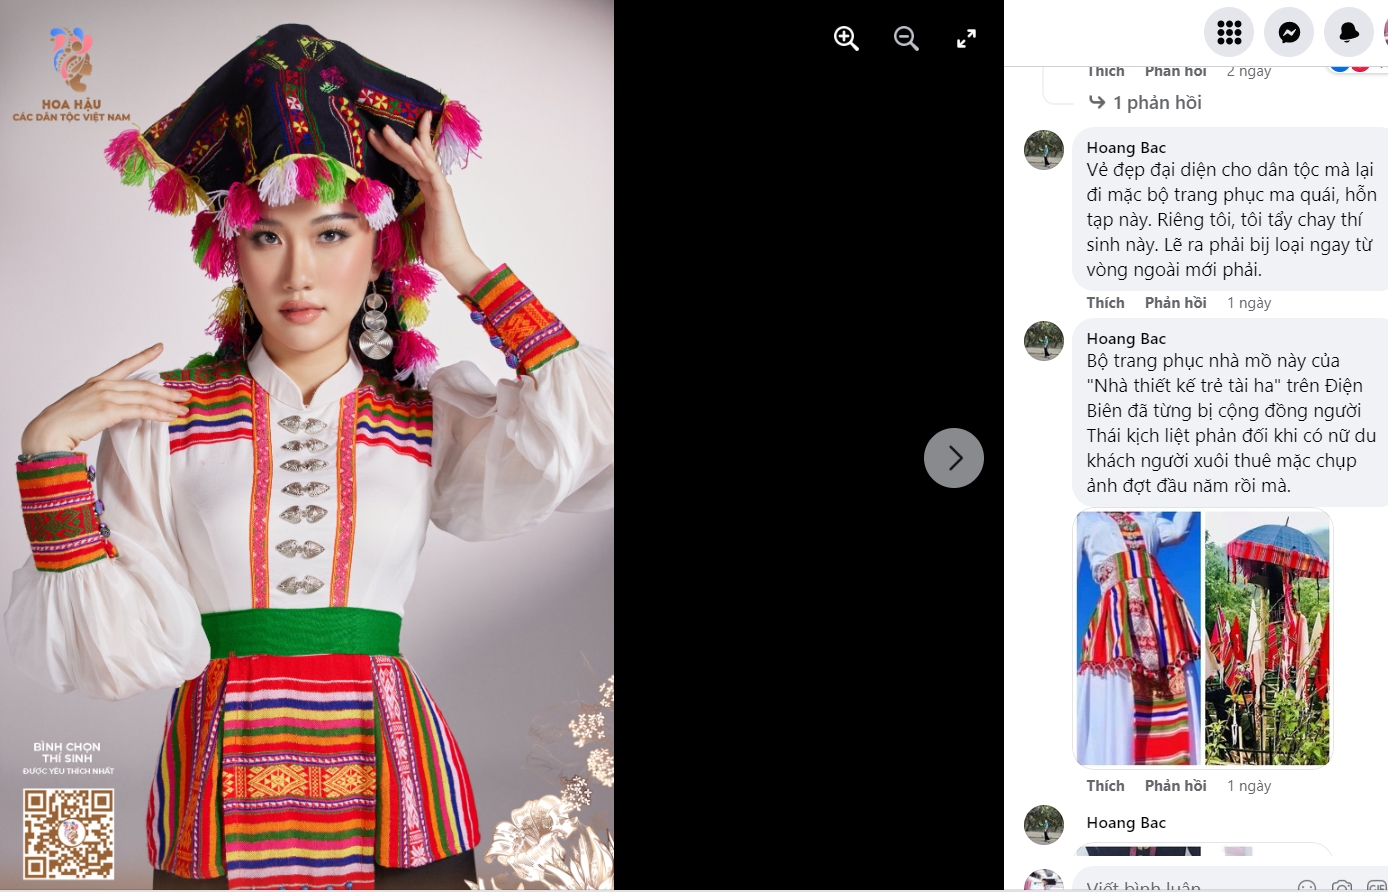 Trước đó, thí sinh dân tộc Thái đã mặc bộ trang phục dân tộc Thái cách tân (theo nhiều người Thái có phần ma mị) gây ra những bức xúc cho cộng đồng dân tộc Thái